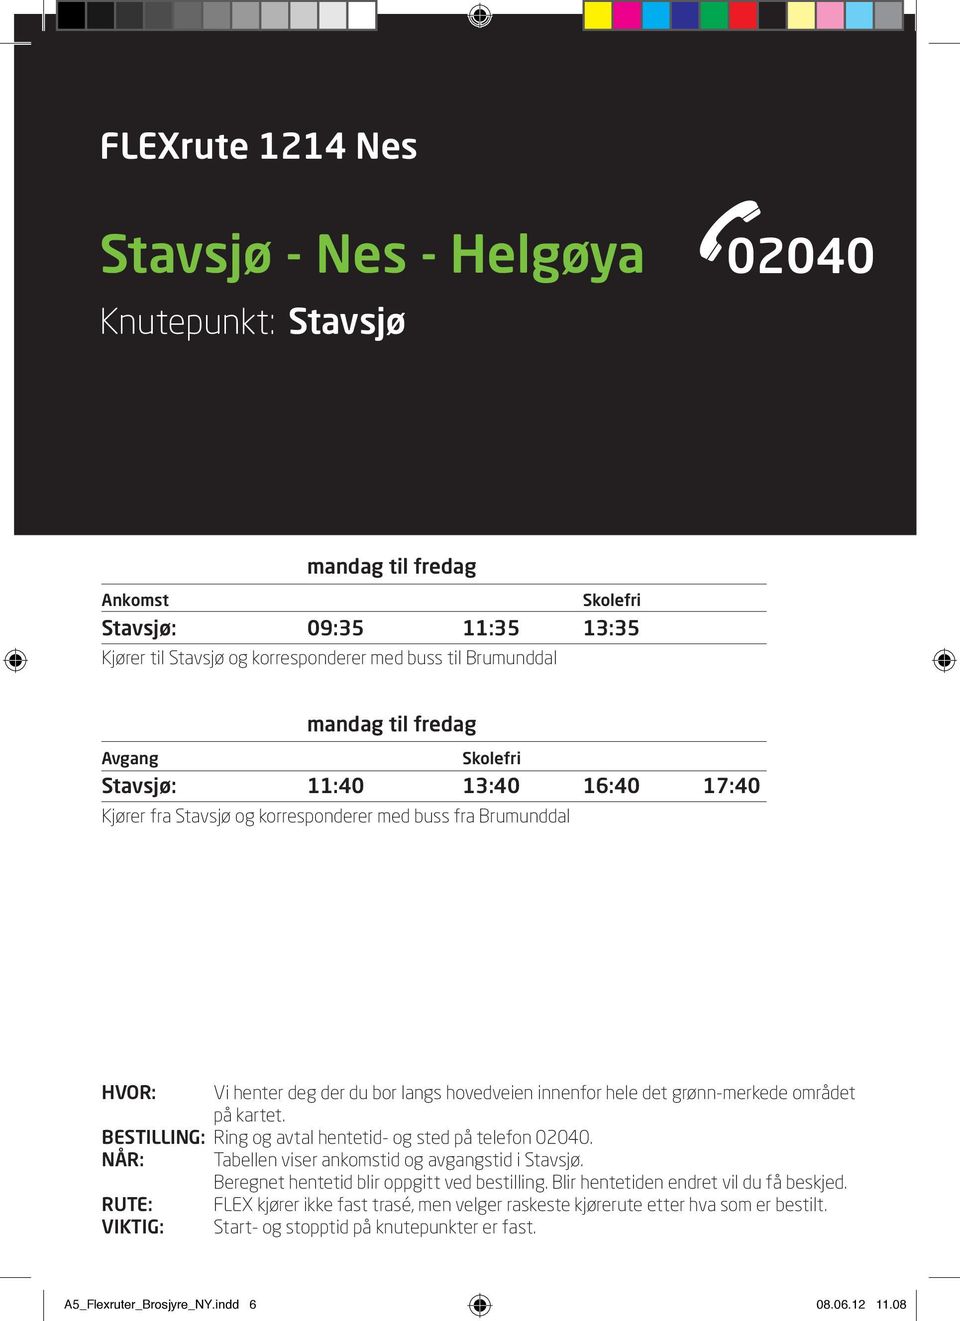 BESTILLING: Ring og avtal hentetid- og sted på telefon 02040. NÅR: Tabellen viser ankomstid og avgangstid i Stavsjø. Beregnet hentetid blir oppgitt ved bestilling.